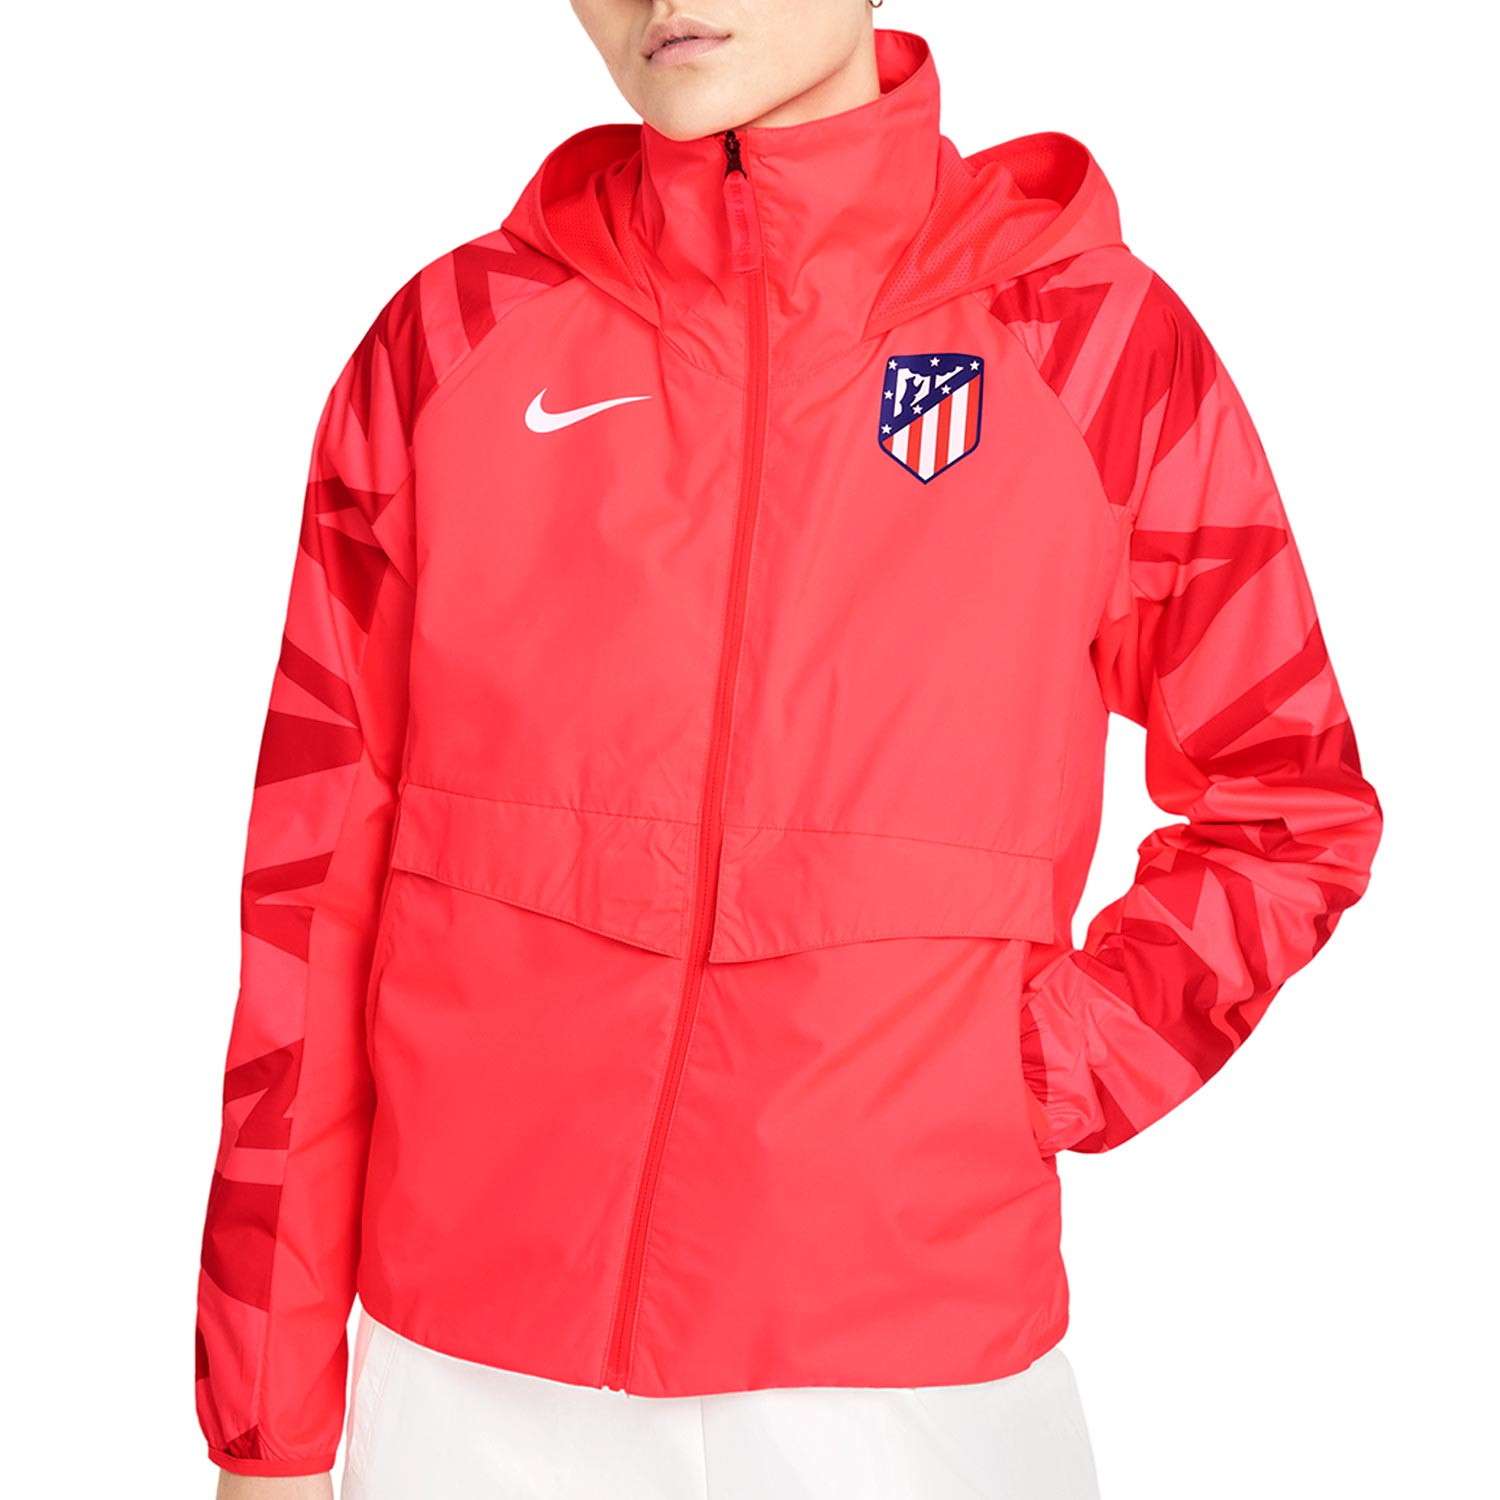 Cortavientos Nike Atlético All Fan mujer | futbolmania